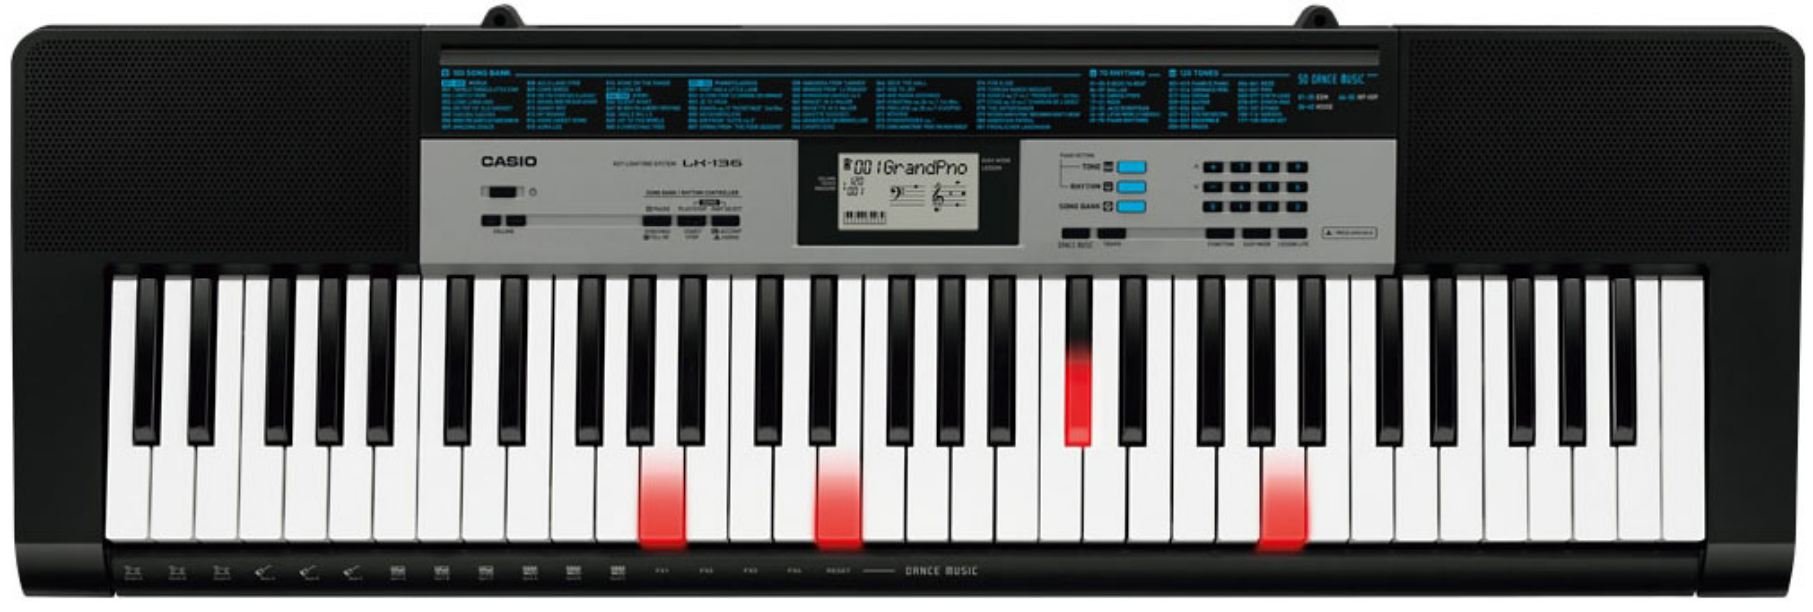 CASIO LK-136 синтезатор 61 клавиша с подсветкой, 32-нотная полифония (максимально), 120 тембров, 70 стилей от музыкального магазина МОРОЗ МЬЮЗИК